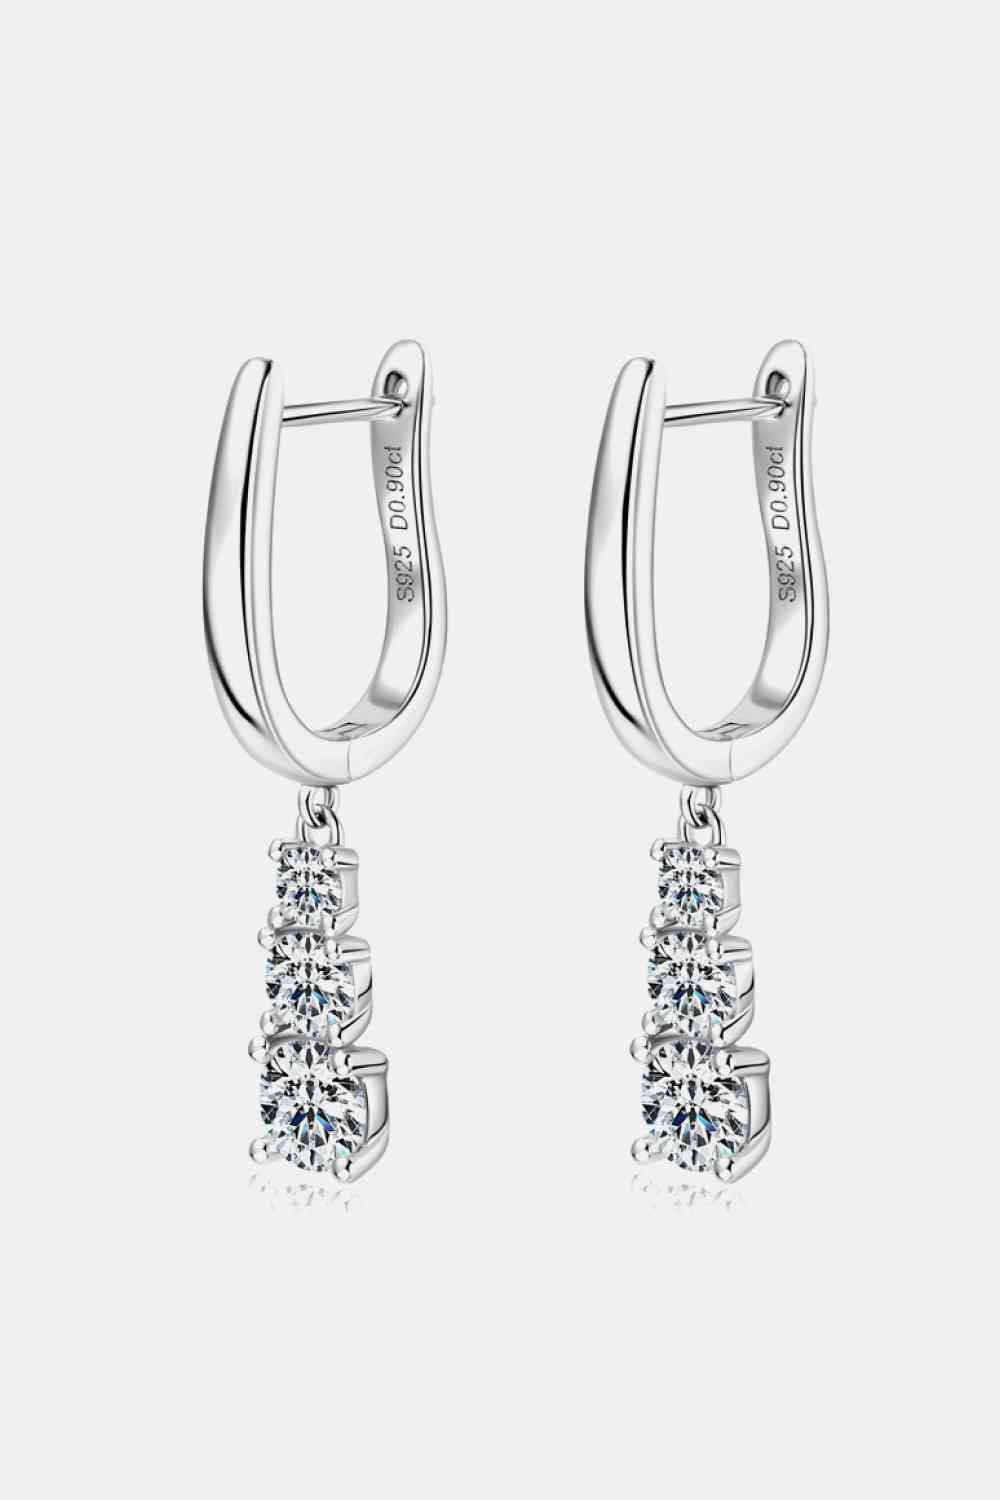 a pair of silver hoop earrings with crystal stones